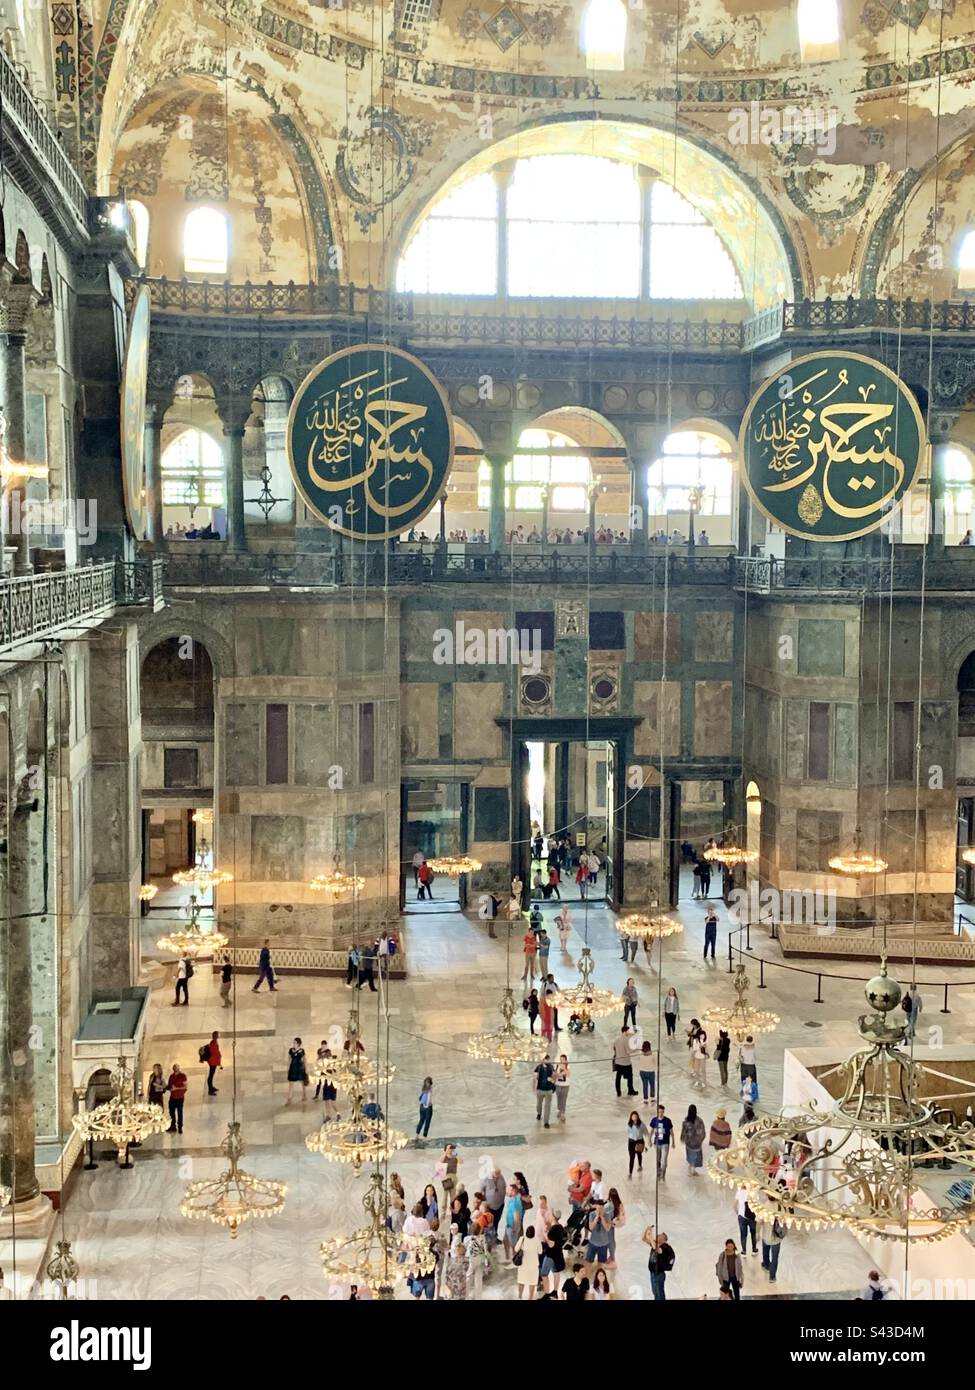 Interno della grande moschea di Hagia Sophia (Ayasofya Camii), Istanbul, Turchia. Originariamente costruita come chiesa ortodossa orientale fino alla conquista di Costantinopoli da parte dell'Impero Ottomano nel 1453 Foto Stock